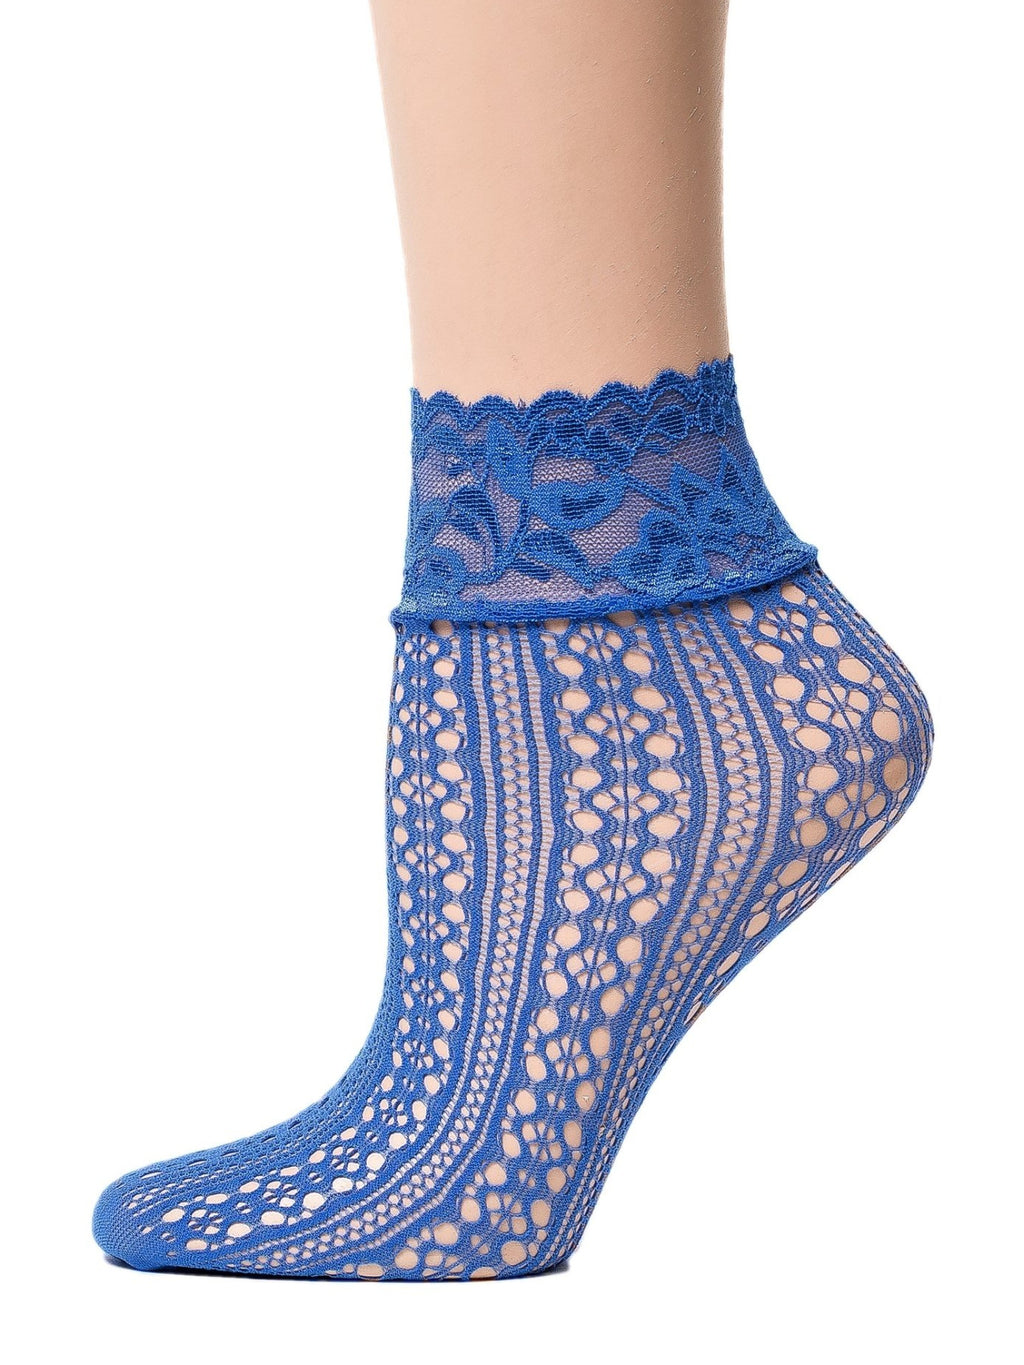 Posh Blue Mesh Socks - Global Trendz Fashion®